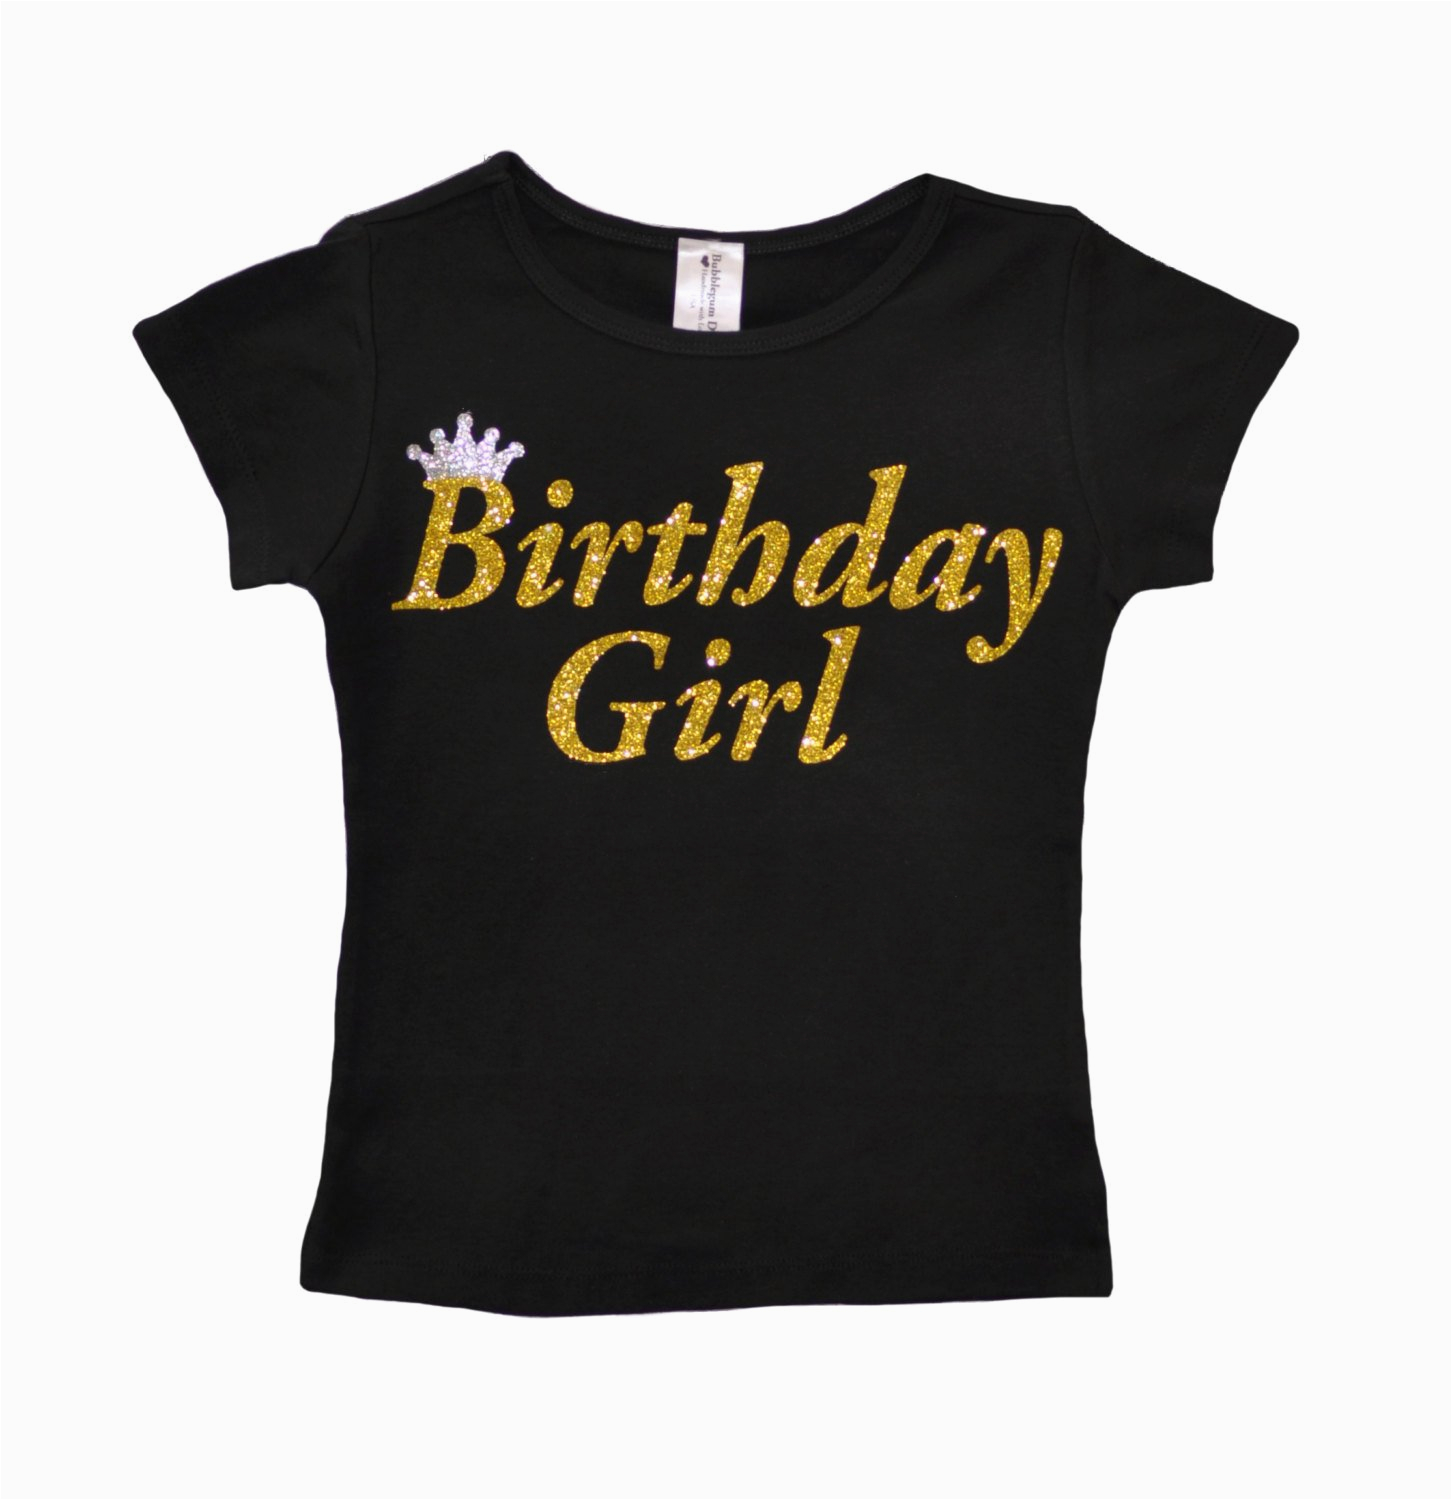 birthday girl shirt party t shirt black